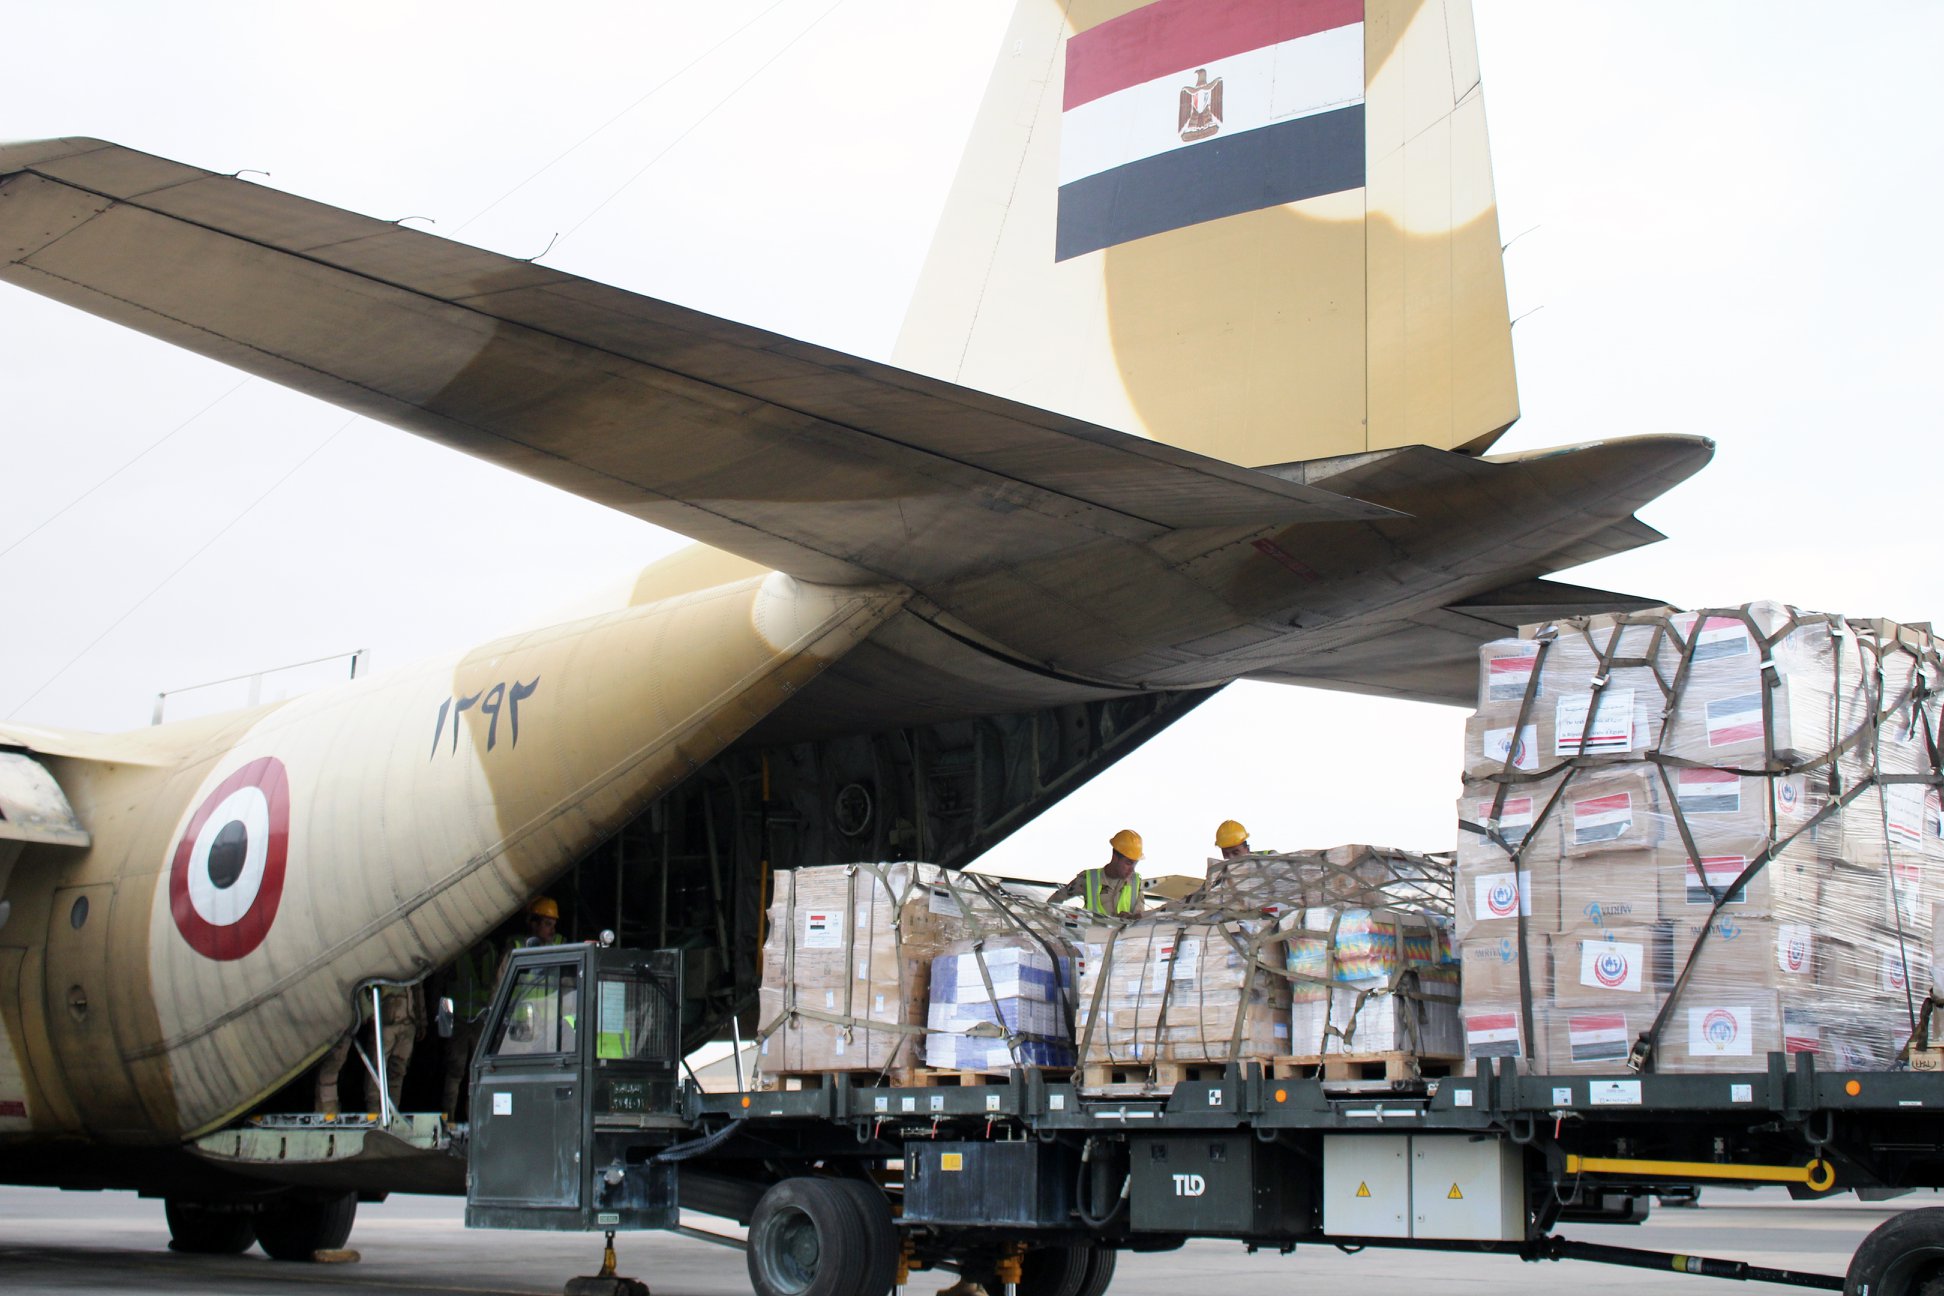   مصر ترسل مساعدات طبية عاجلة إلى دولة جيبوتى